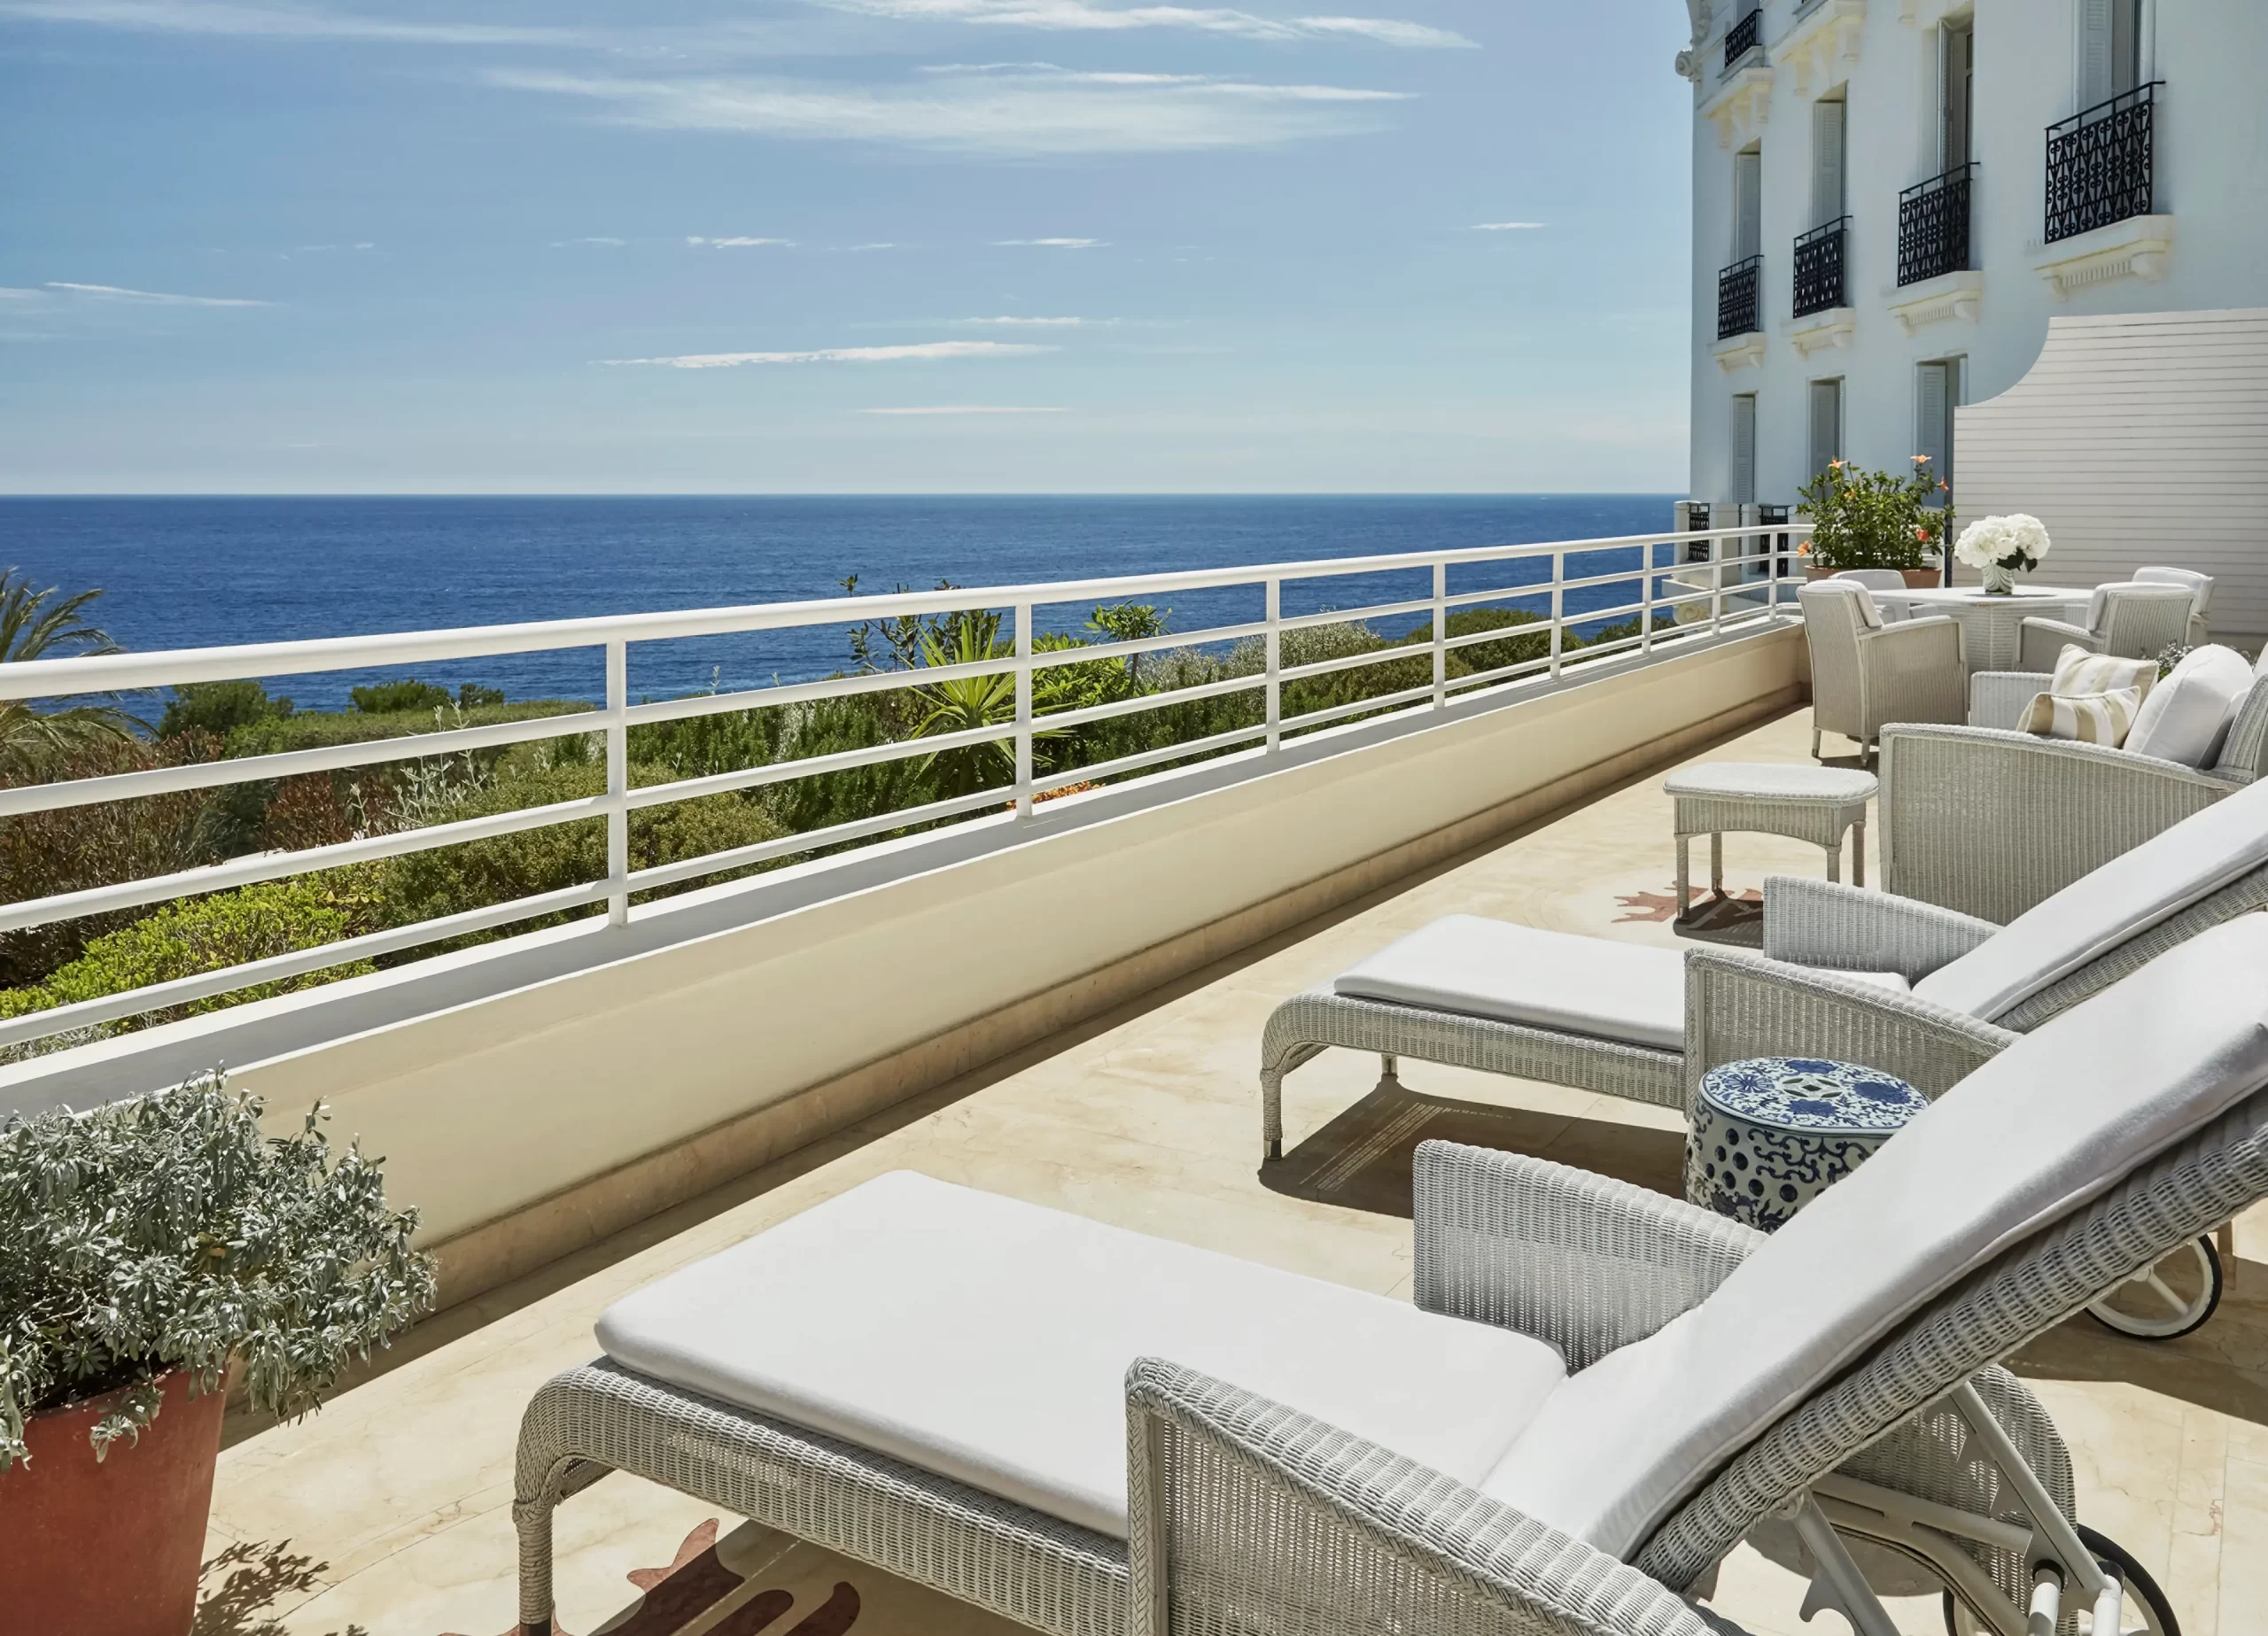 Grand-Hotel du Cap-Ferrat_France_Palace Sea-View Suite 04_VIP Trips For Kids